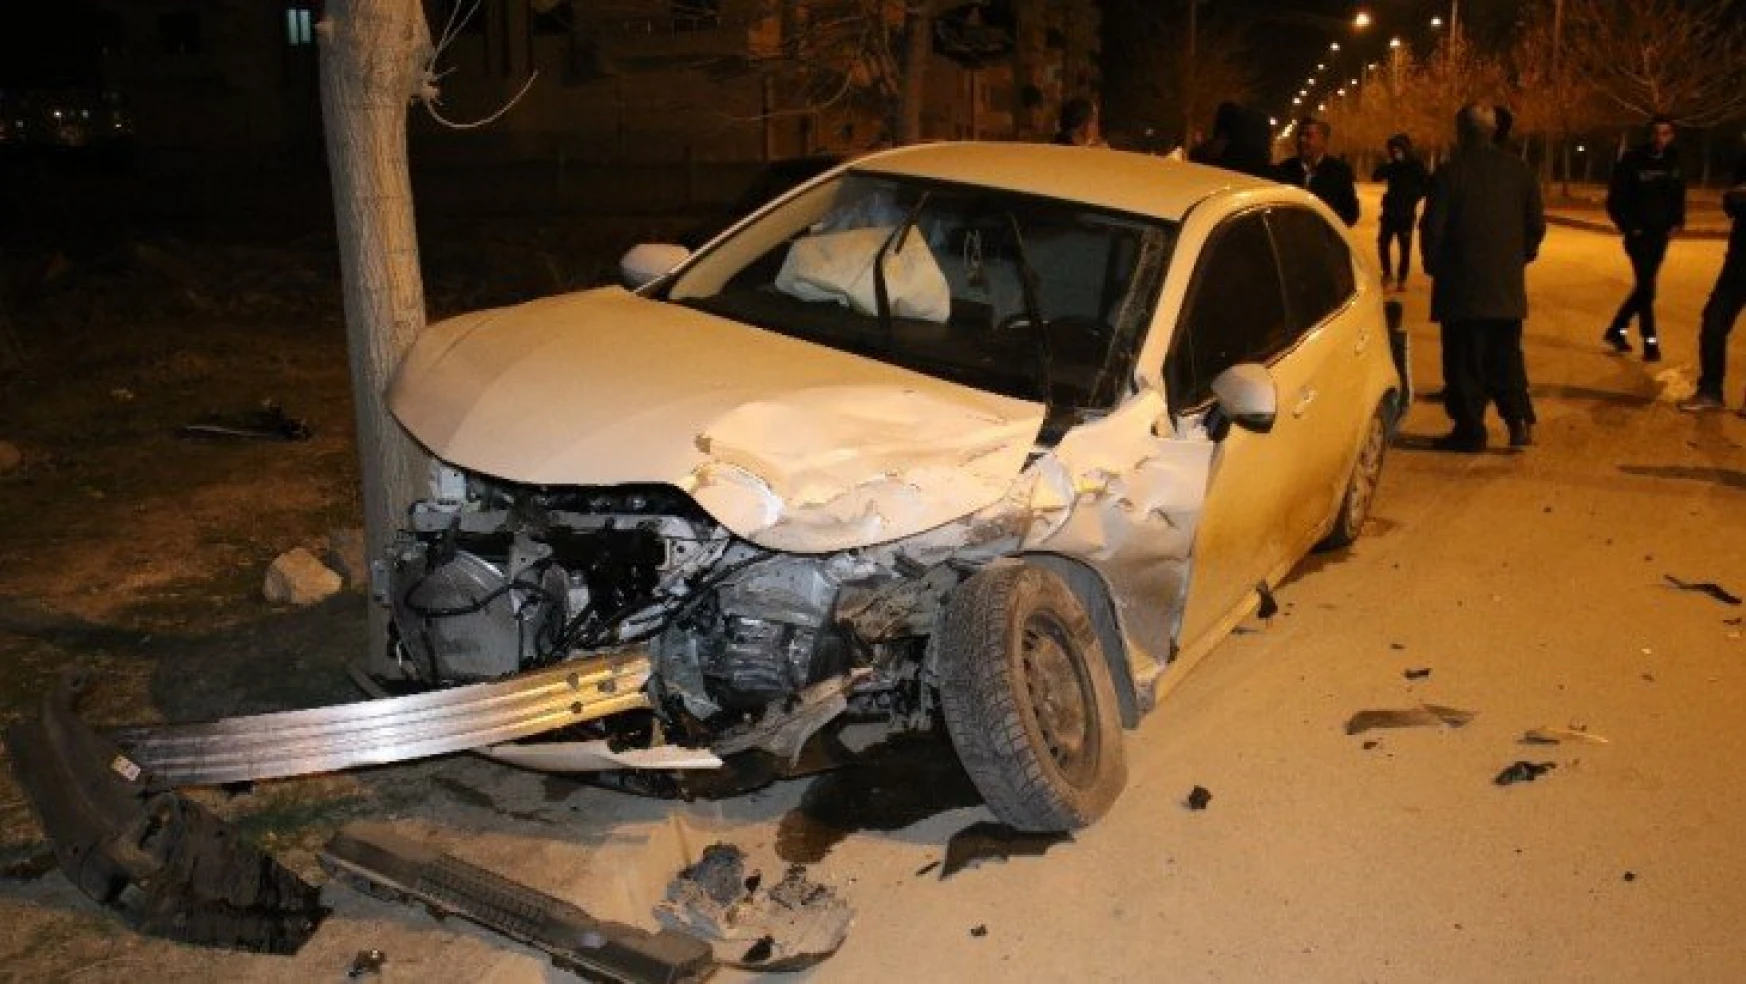 Elazığ'da  minibüs ile otomobili çarpıştı: 5 yaralı